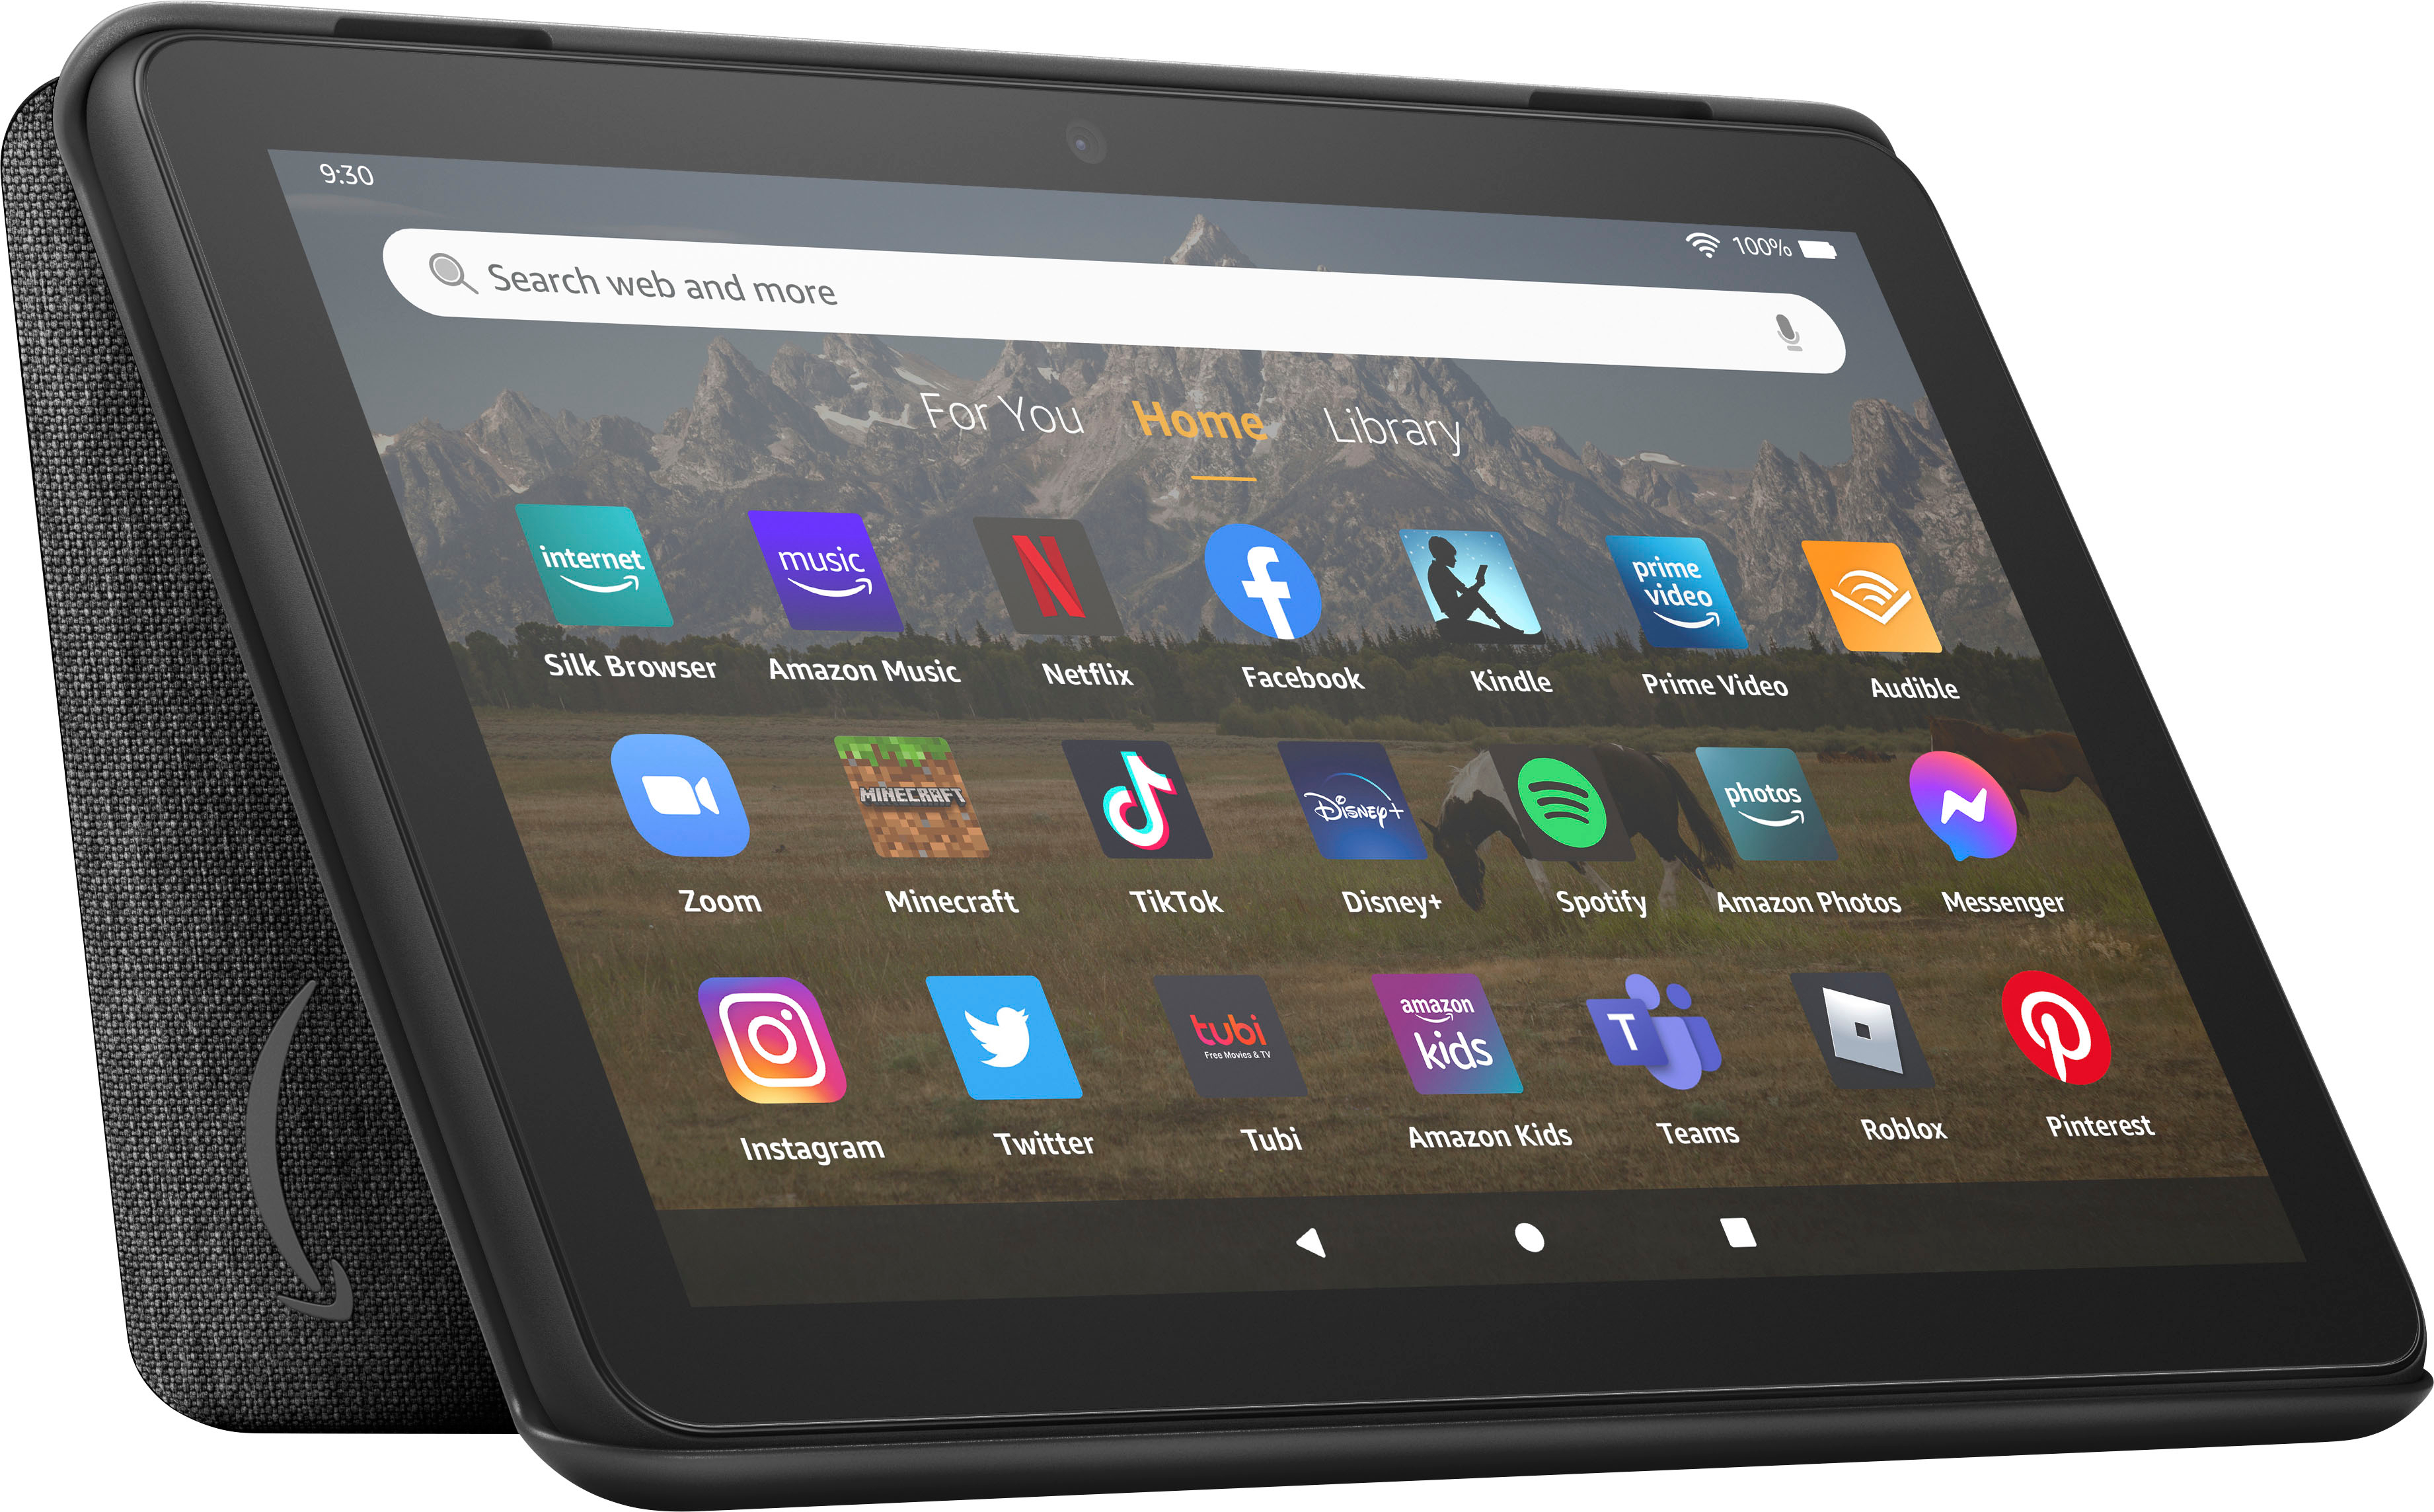 2022 Tout nouvel étui pour tablette  Kindle Fire HD 8 (compatible  avec la 12e/10e génération, version 2022/2020), Grand 